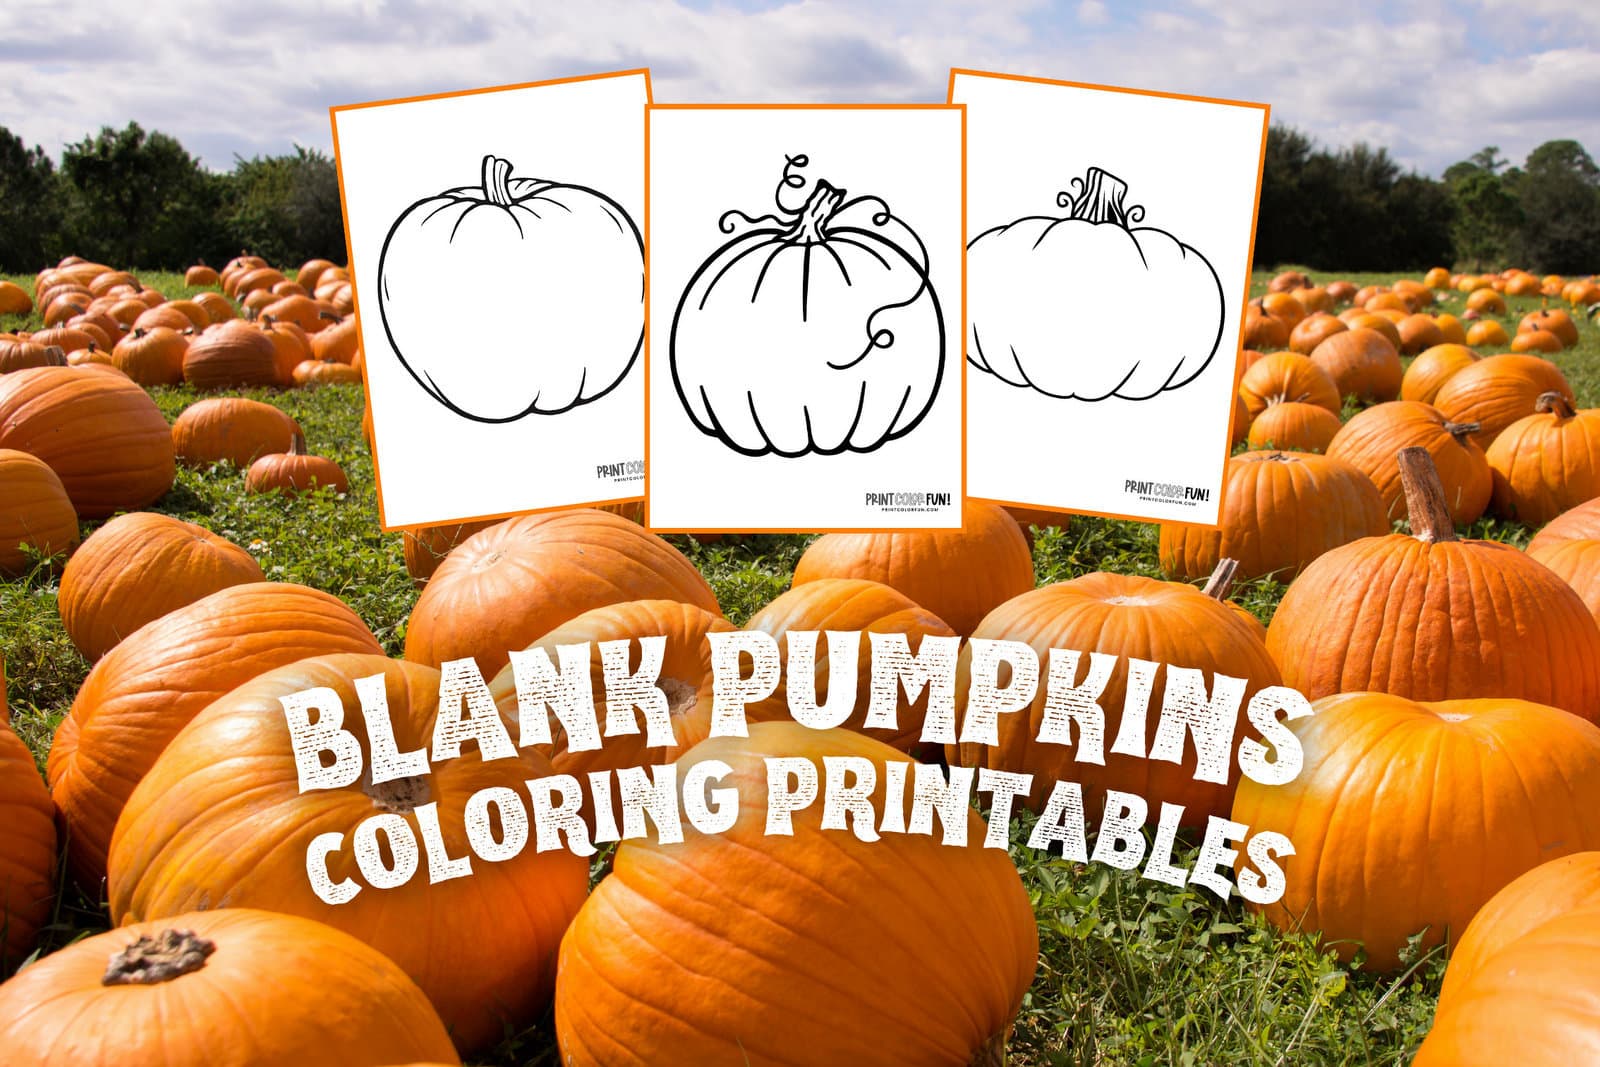 Pumpkin outline printables: 5 large blank pumpkin templates for